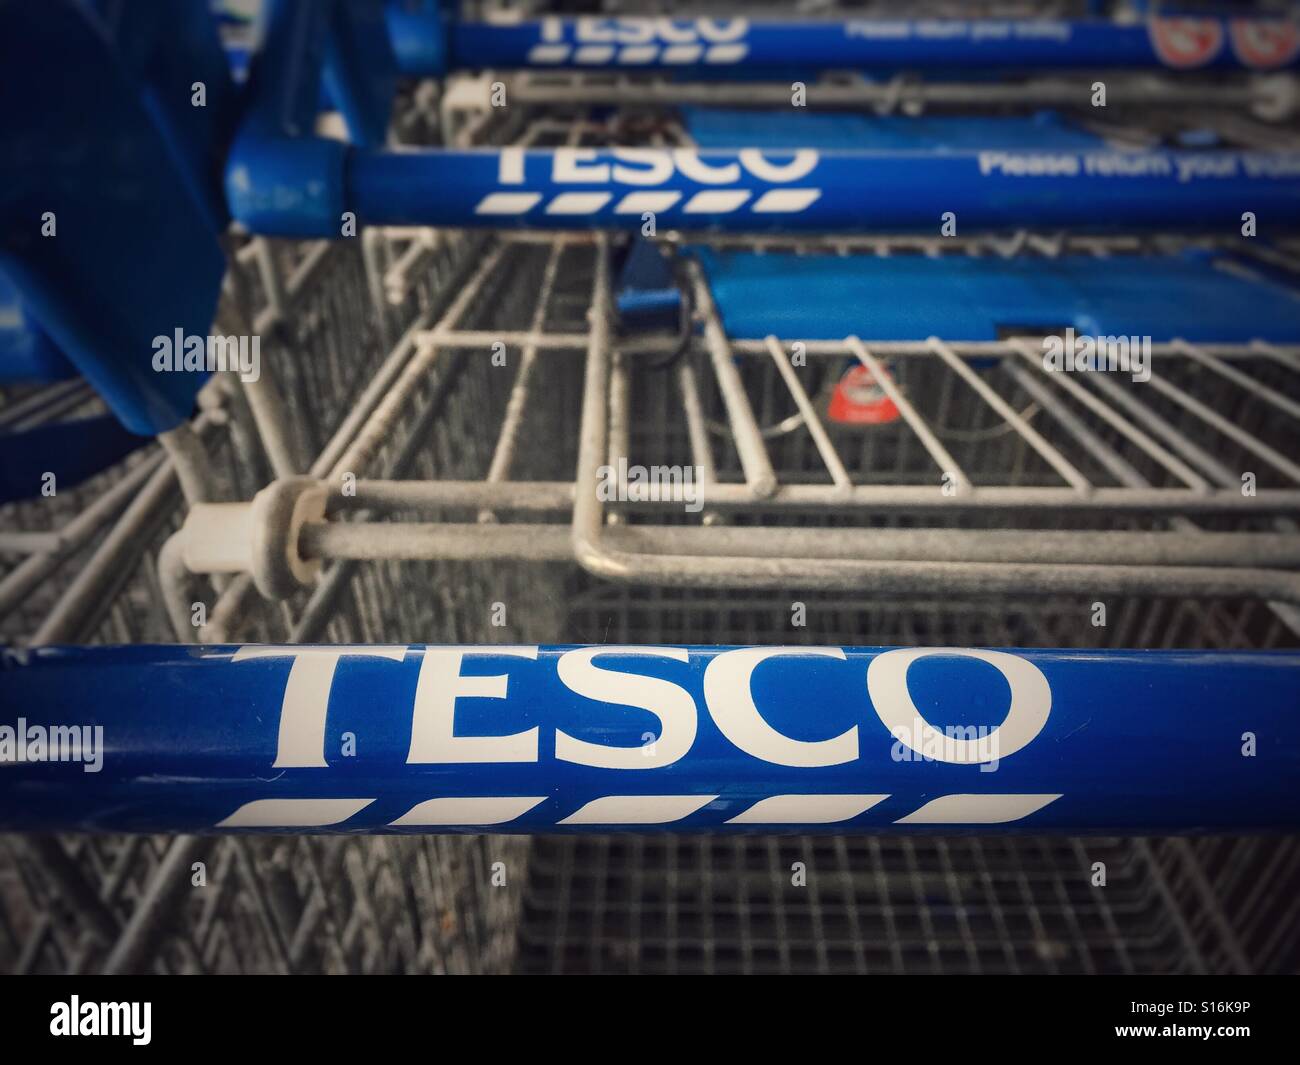 Una fila de supermercado Tesco, carritos mostrando claramente el nombre de  la marca Tesco asas en la camilla Fotografía de stock - Alamy